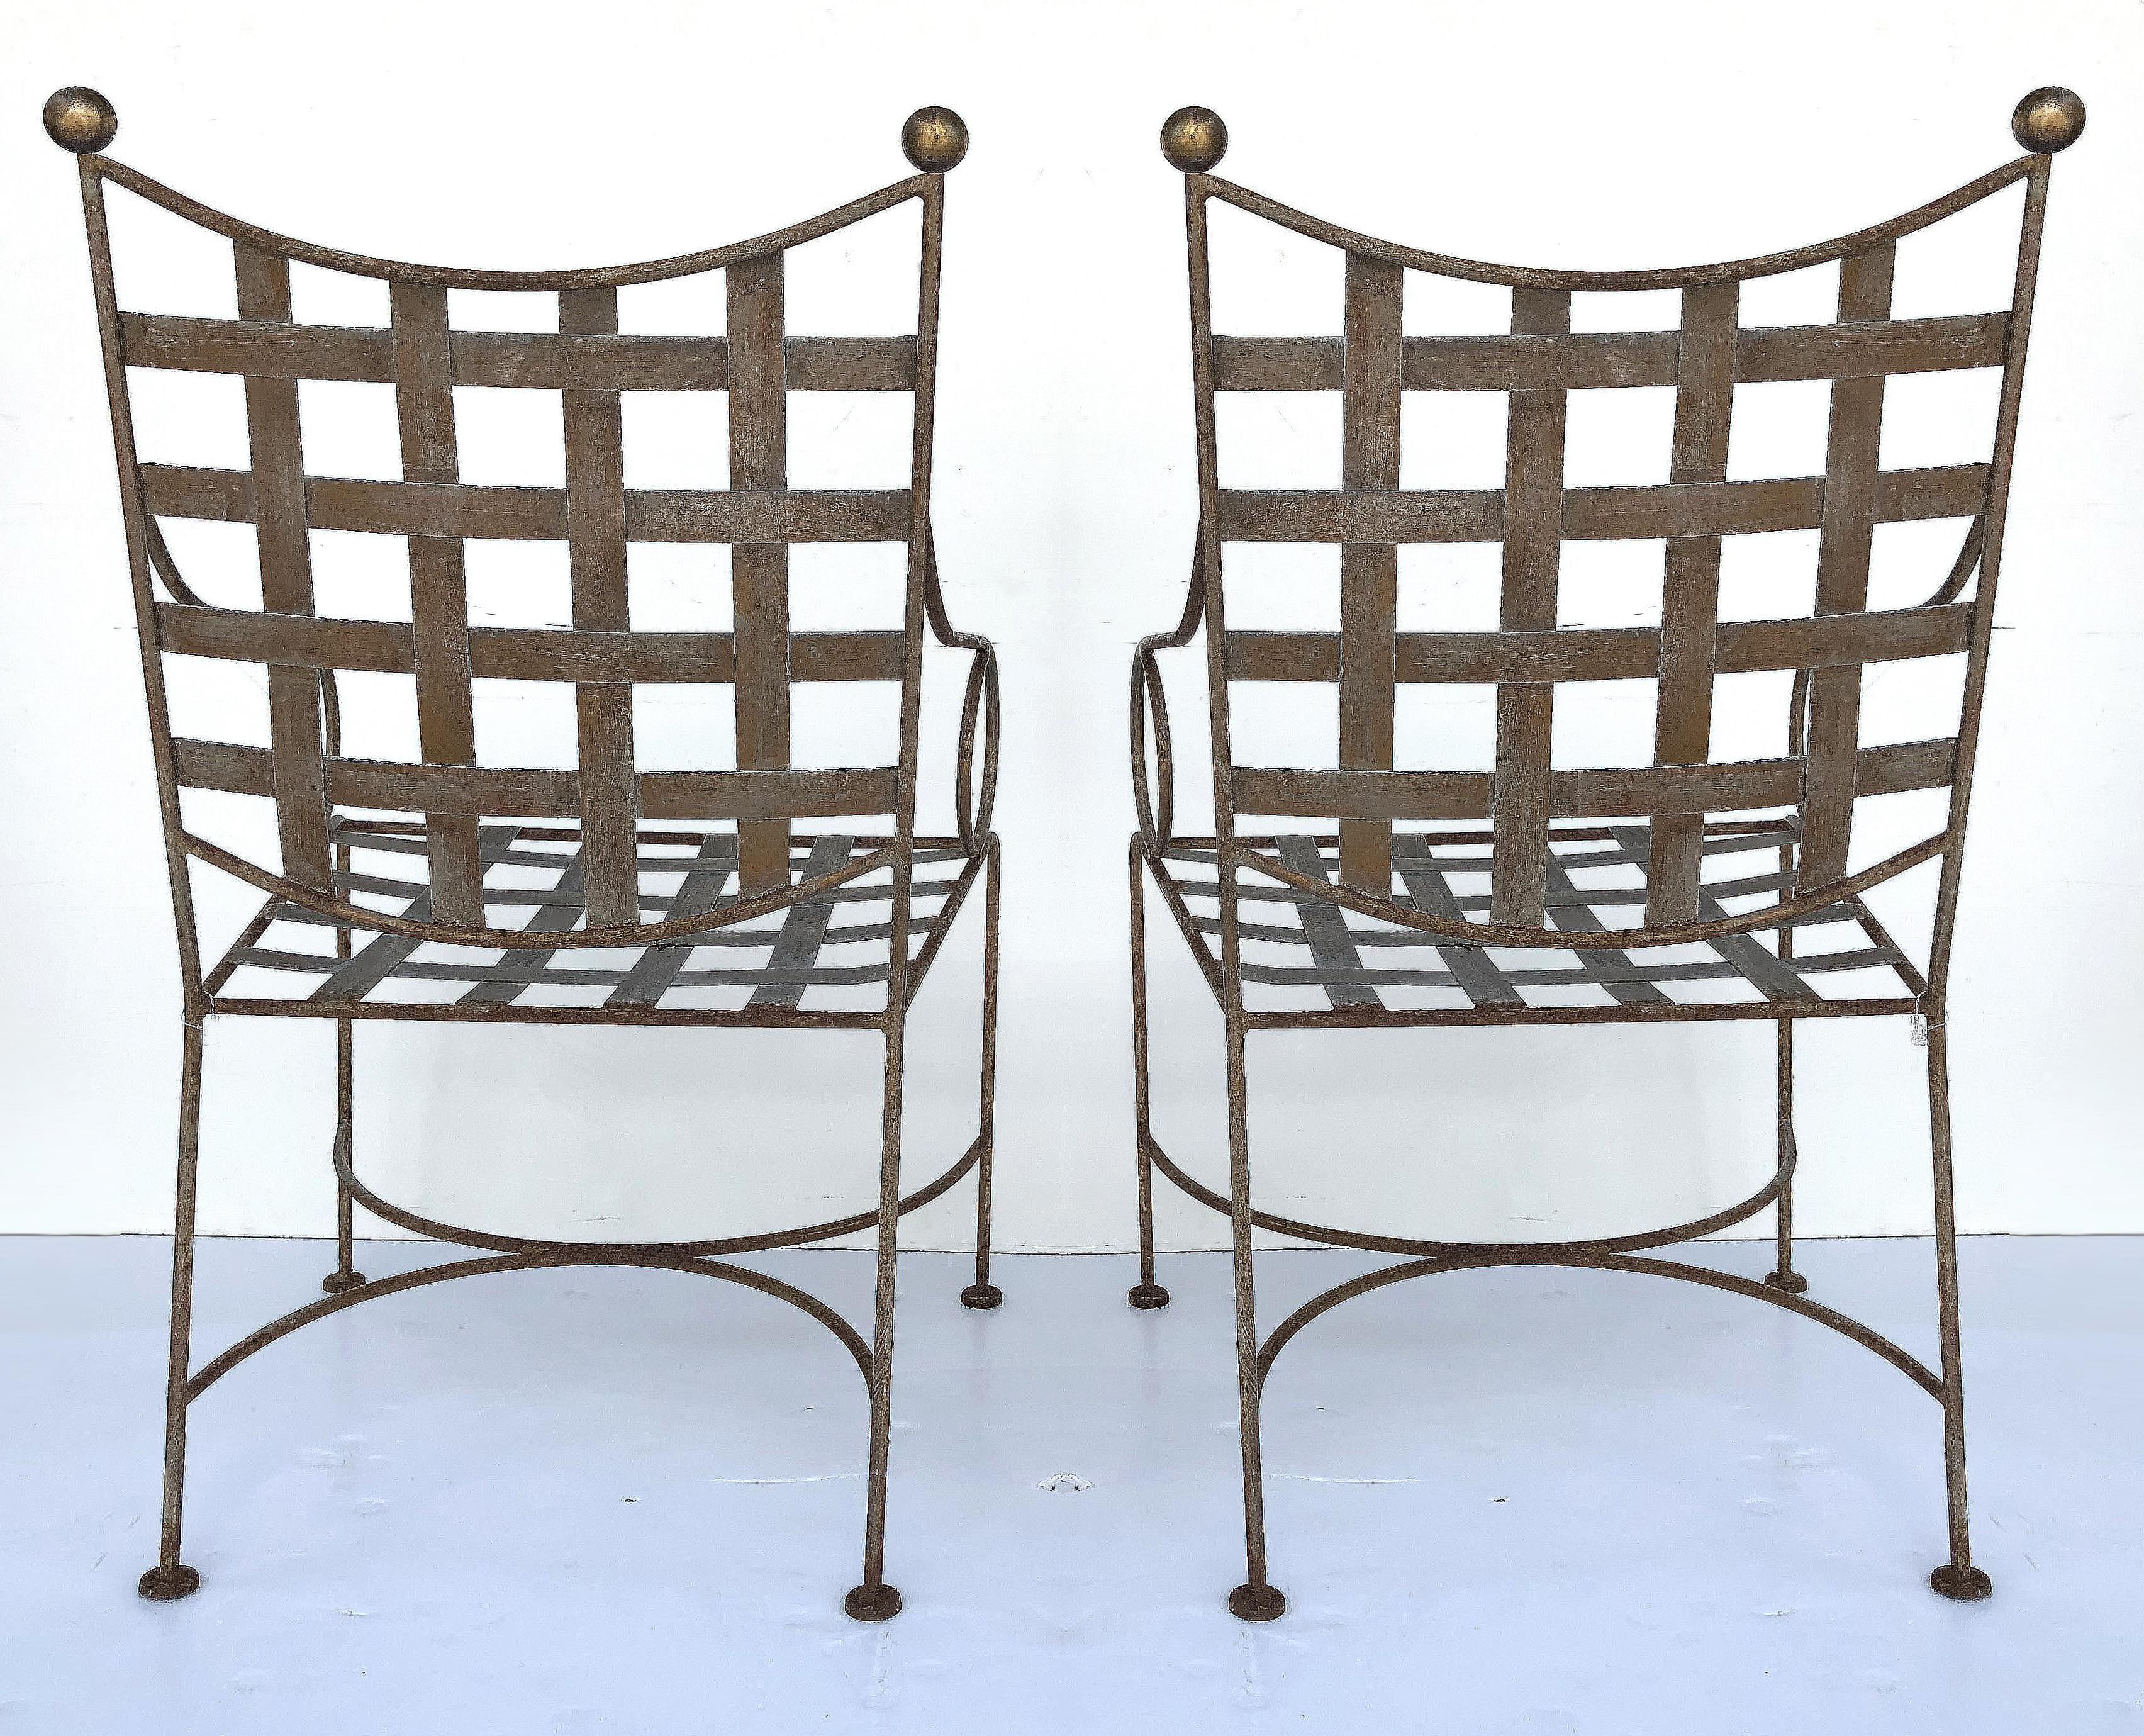 20th Century Midcentury Salterini Wrought Iron Garden Chairs, Pair